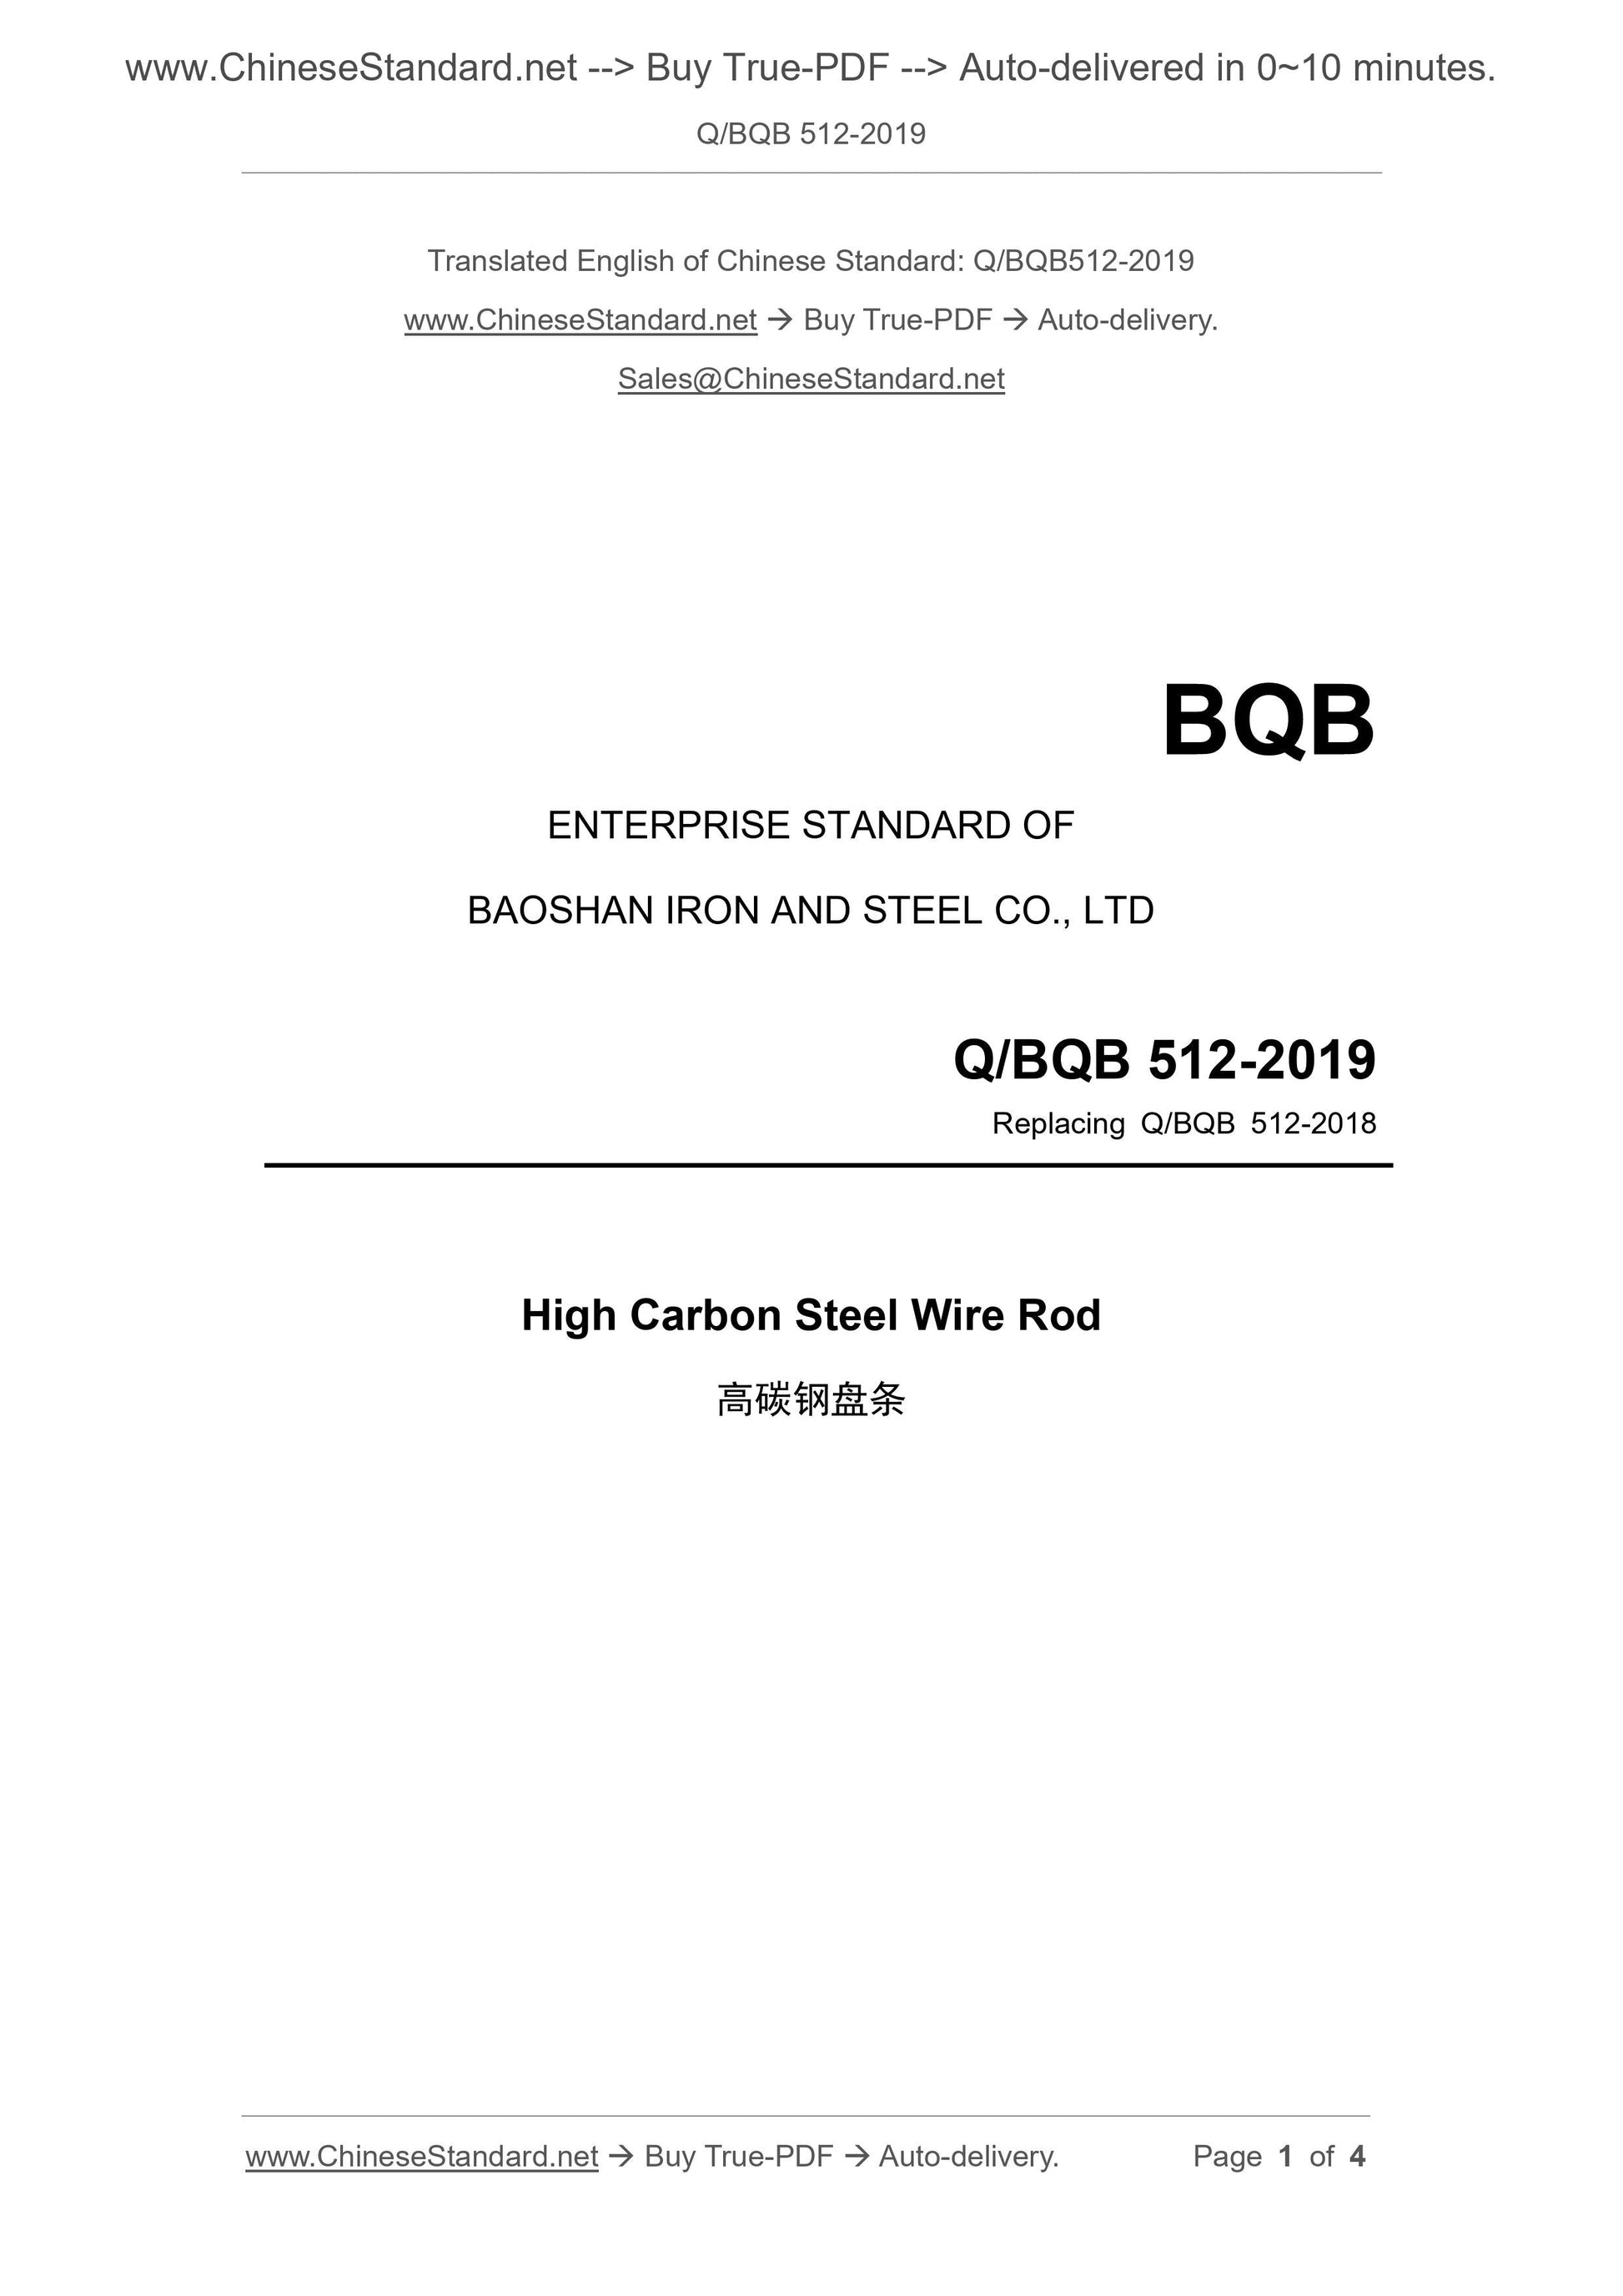 Q/BQB 512-2019 Page 1